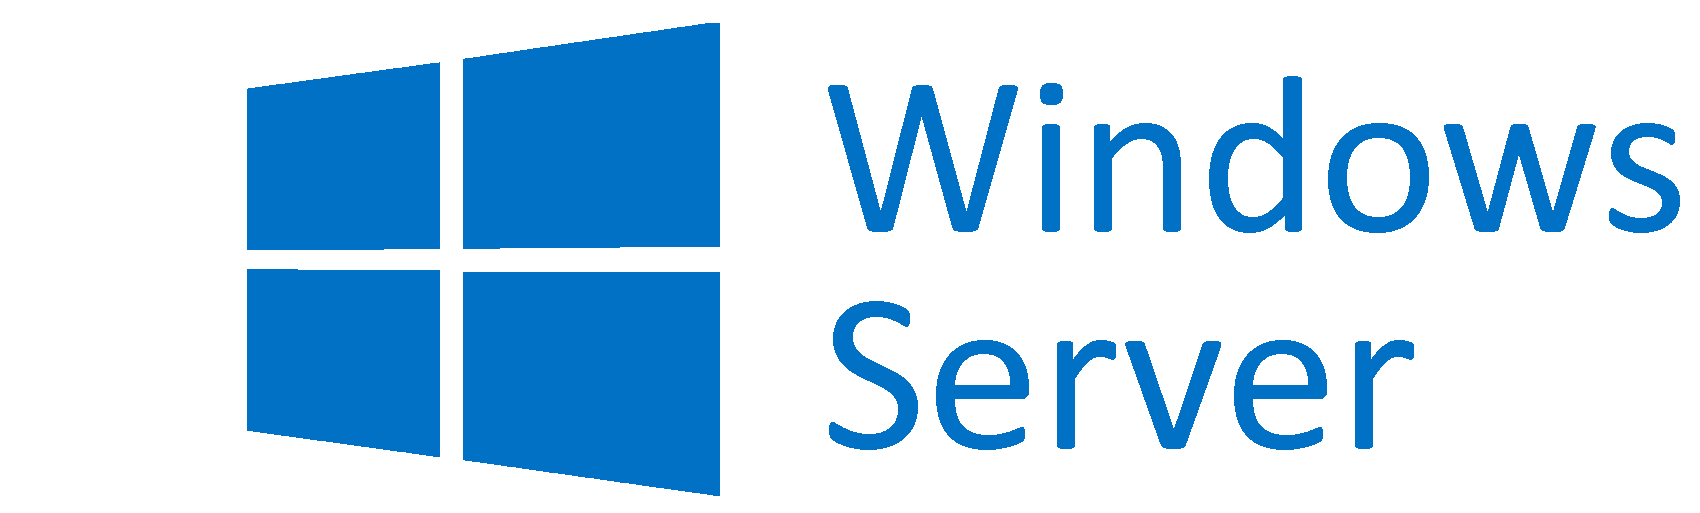 Servidor VPS, Servidor virtual privado, Servidores VPS Windows Server